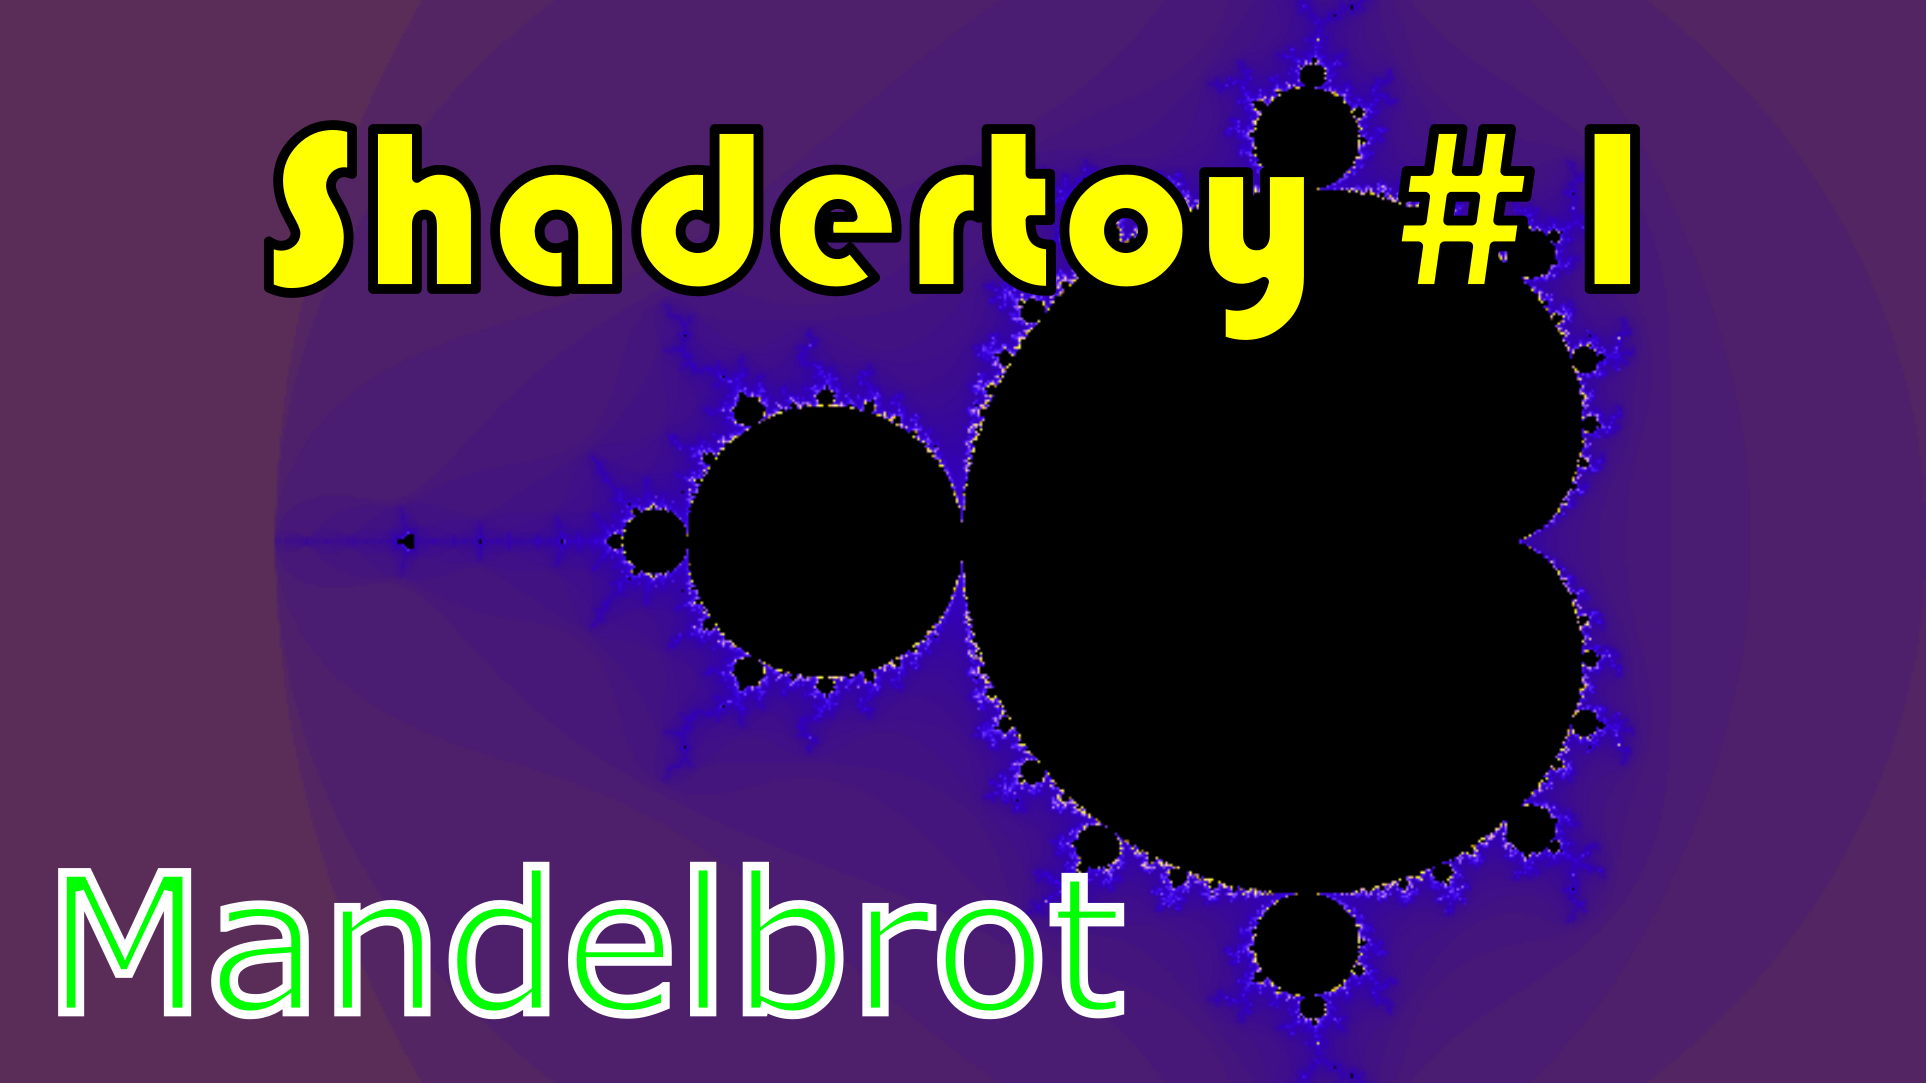 Shadertoy 1 – Mandelbrot